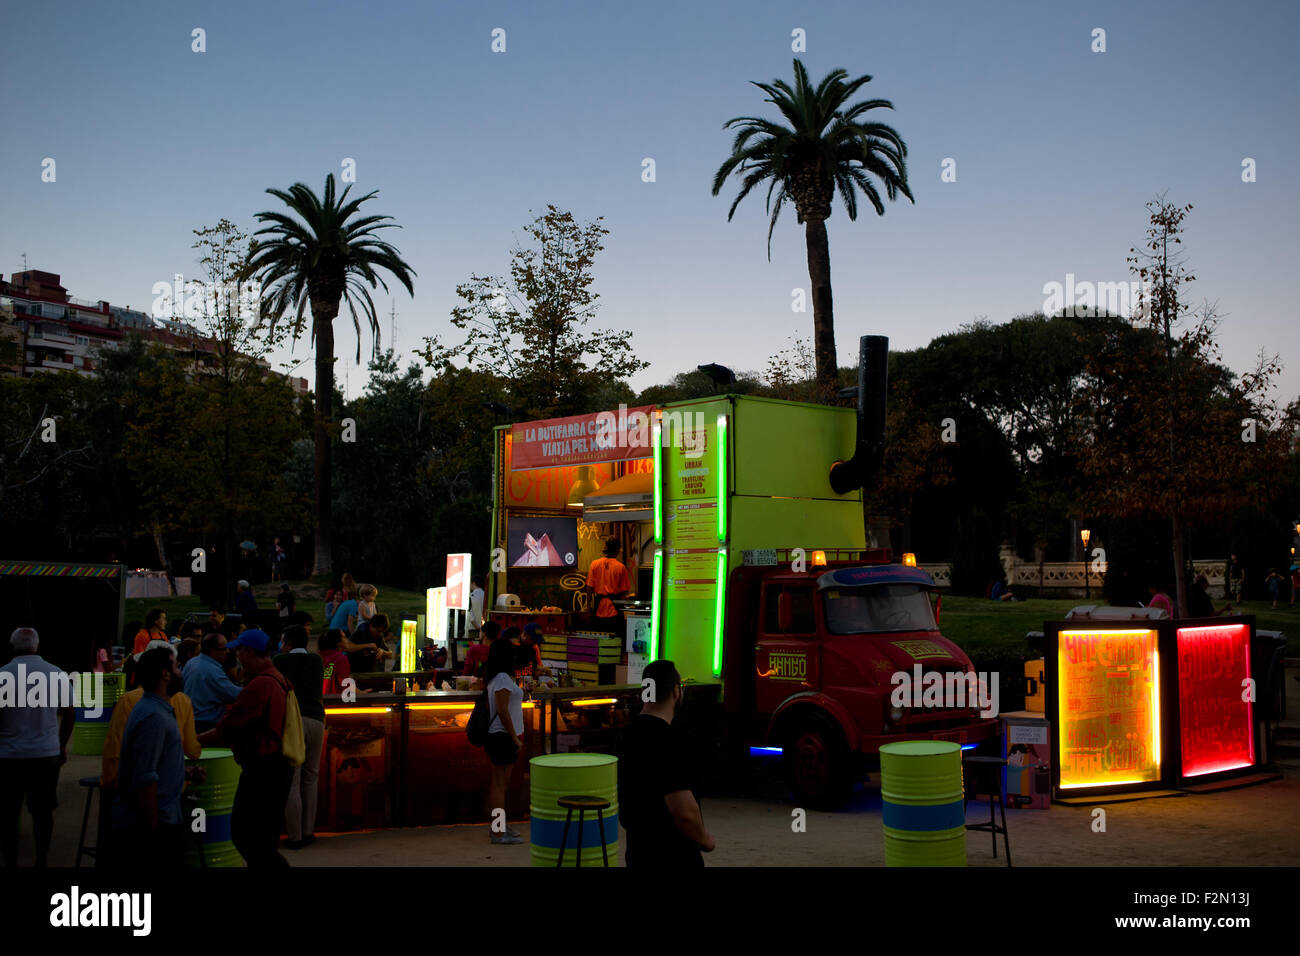 Barcelone, Espagne. 21 Septembre, 2015. Un camion alimentaire est vu dans le Parc de la Ciutadella durant la Merce Festival (Festes de la Merce) à Barcelone, Espagne, le 21 septembre 2015. Le Parc de la Ciutadella à Barcelone est le paramètre pour les représentations et les activités dans le cadre des festivités de la Merce 2015. Crédit : Jordi Boixareu/Alamy Live News Banque D'Images